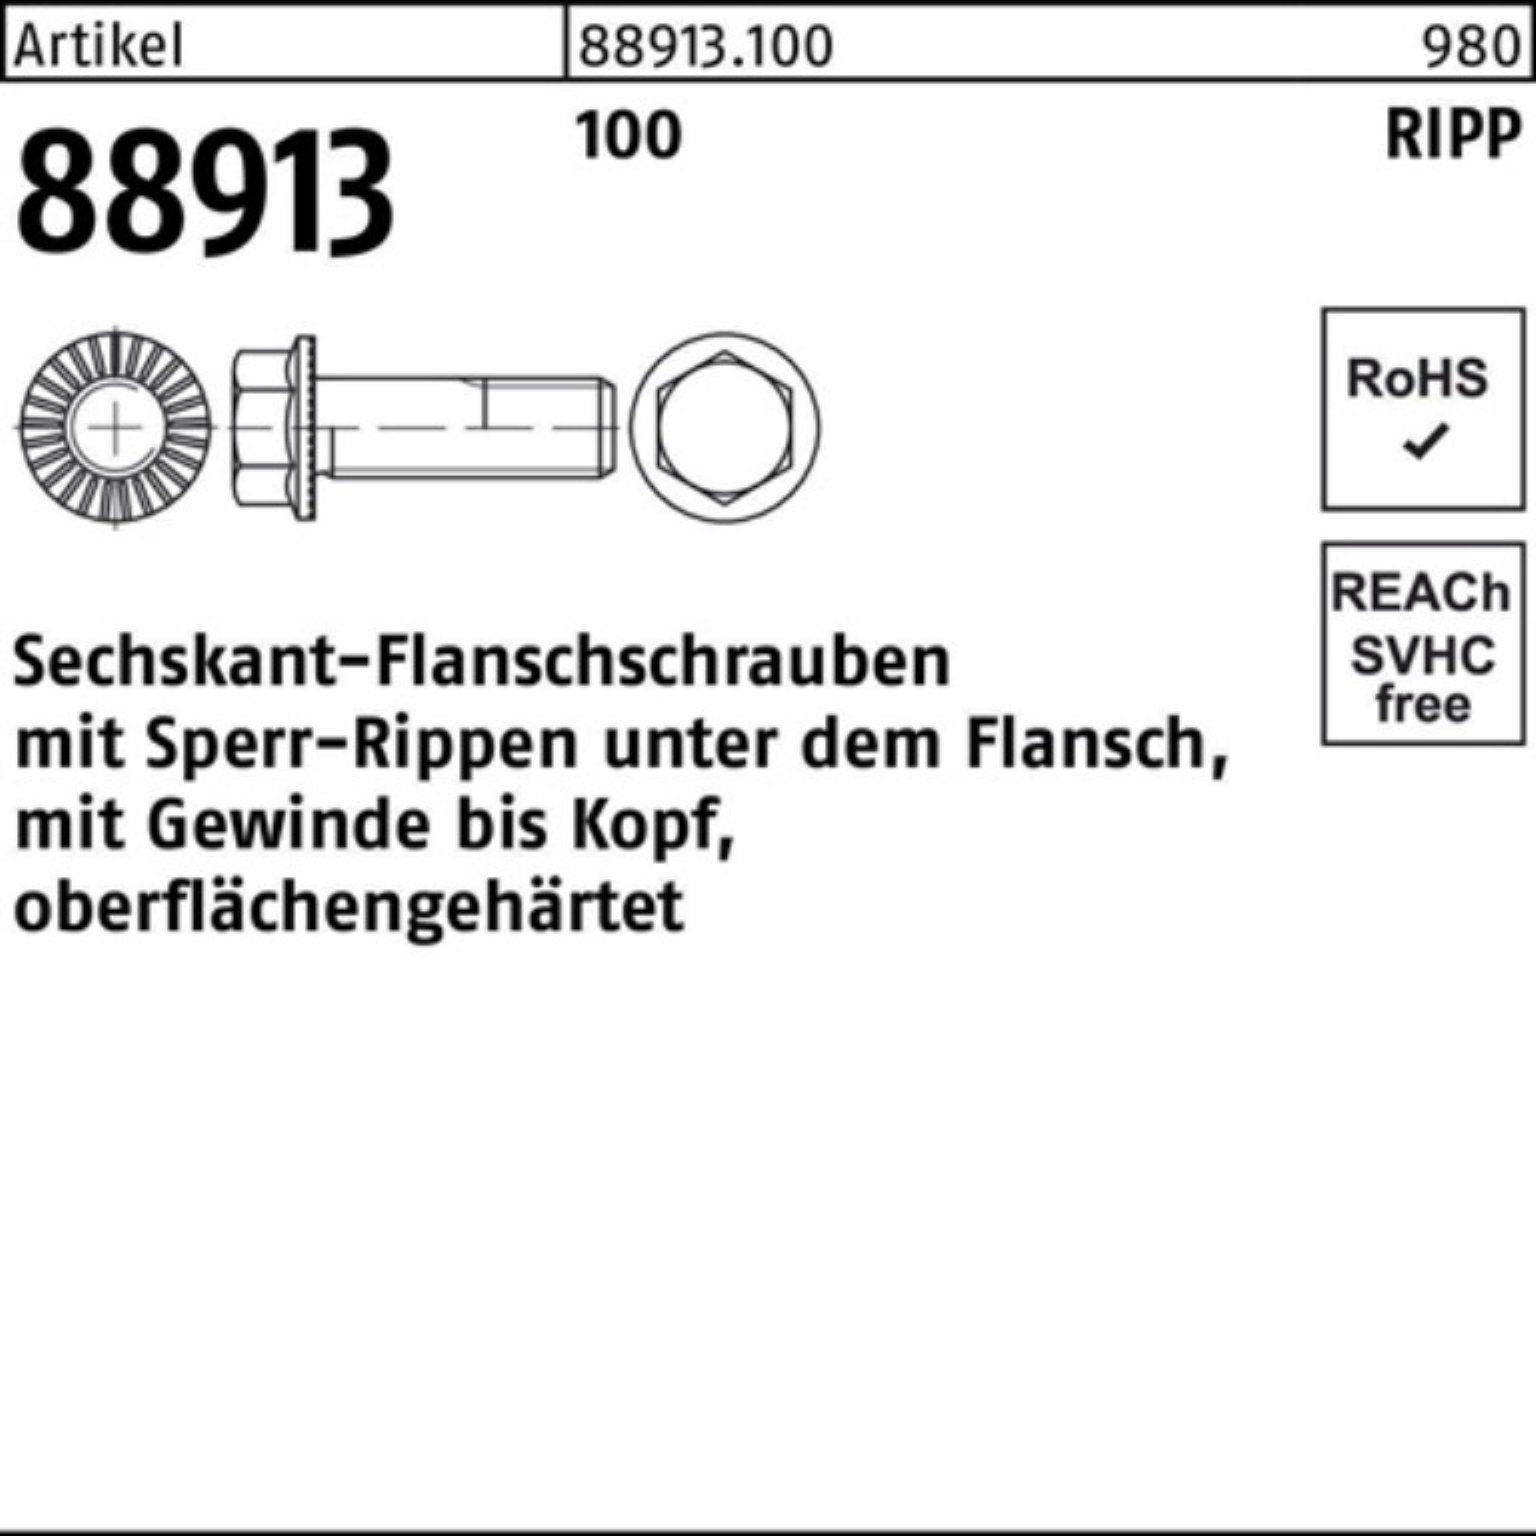 Sperr-Ripp 88913 R VG 200er 20 Schraube M10x Reyher 100 Sechskantflanschschraube Pack